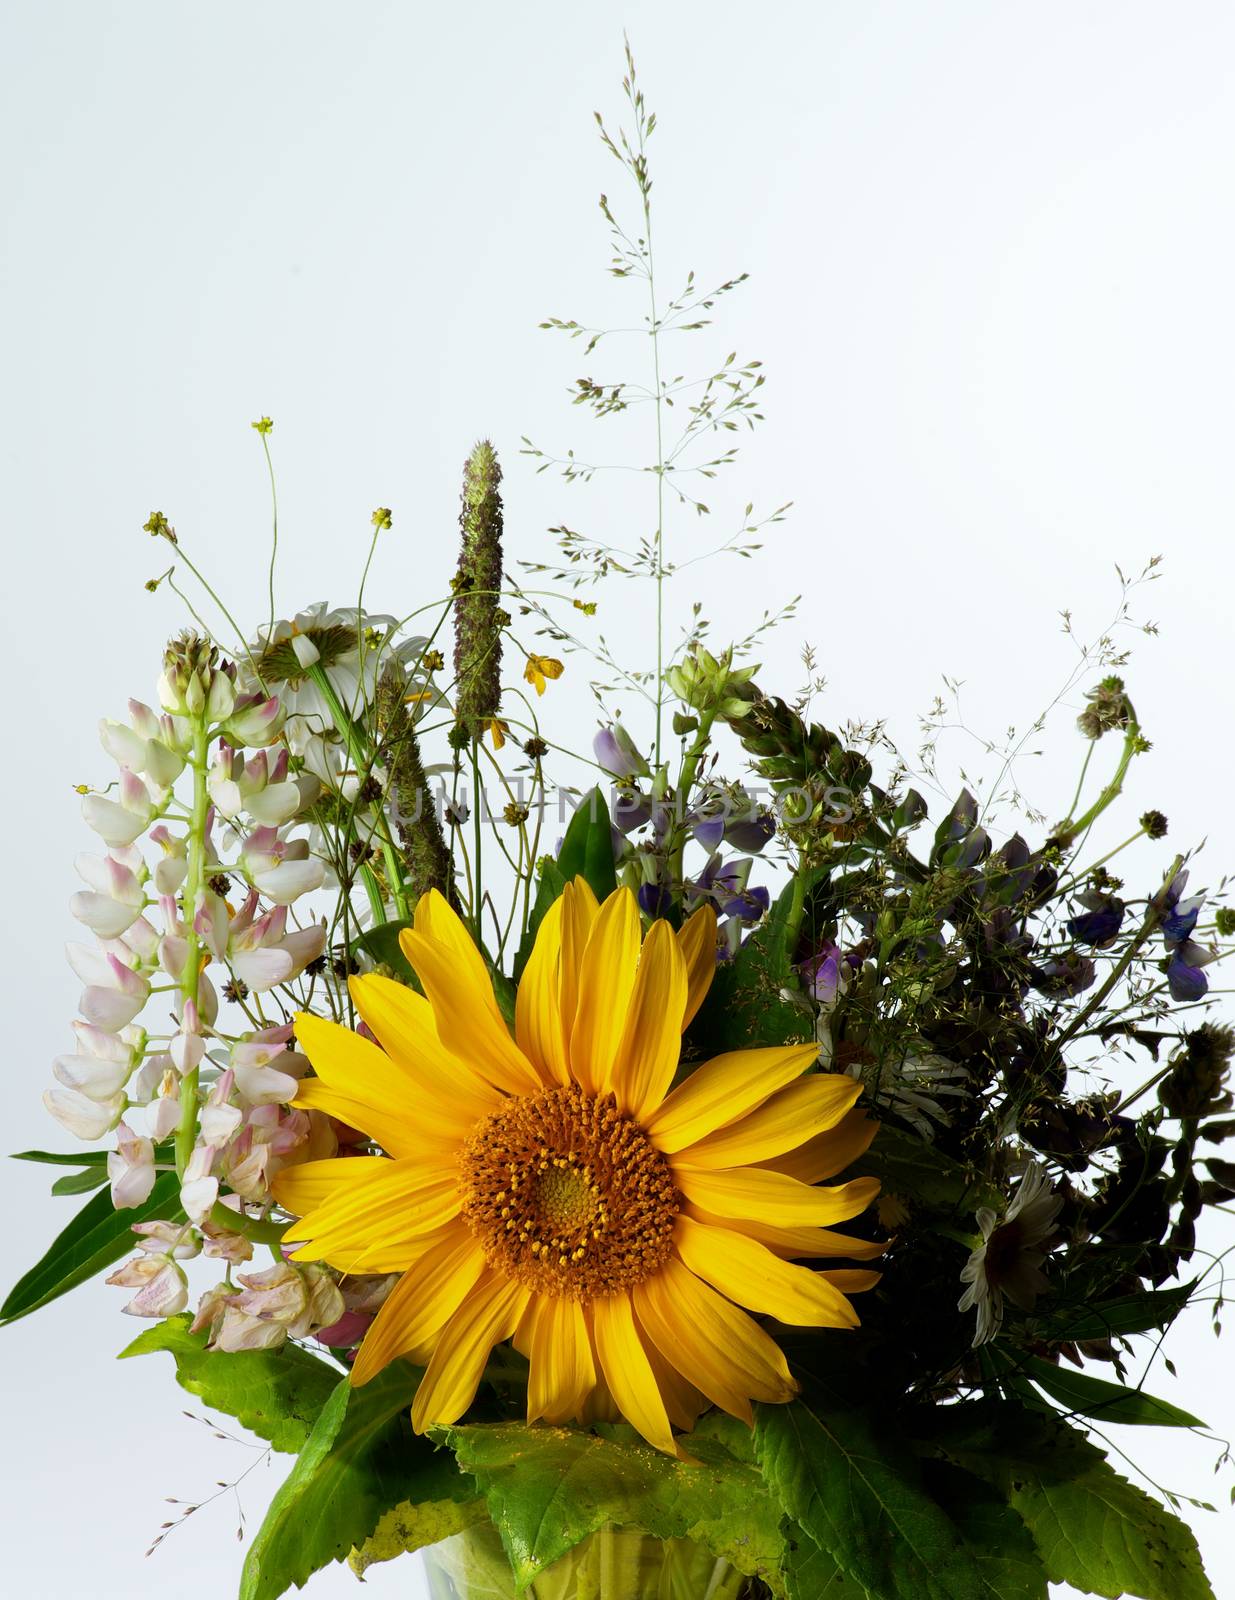 Wildflower Bouquet by zhekos